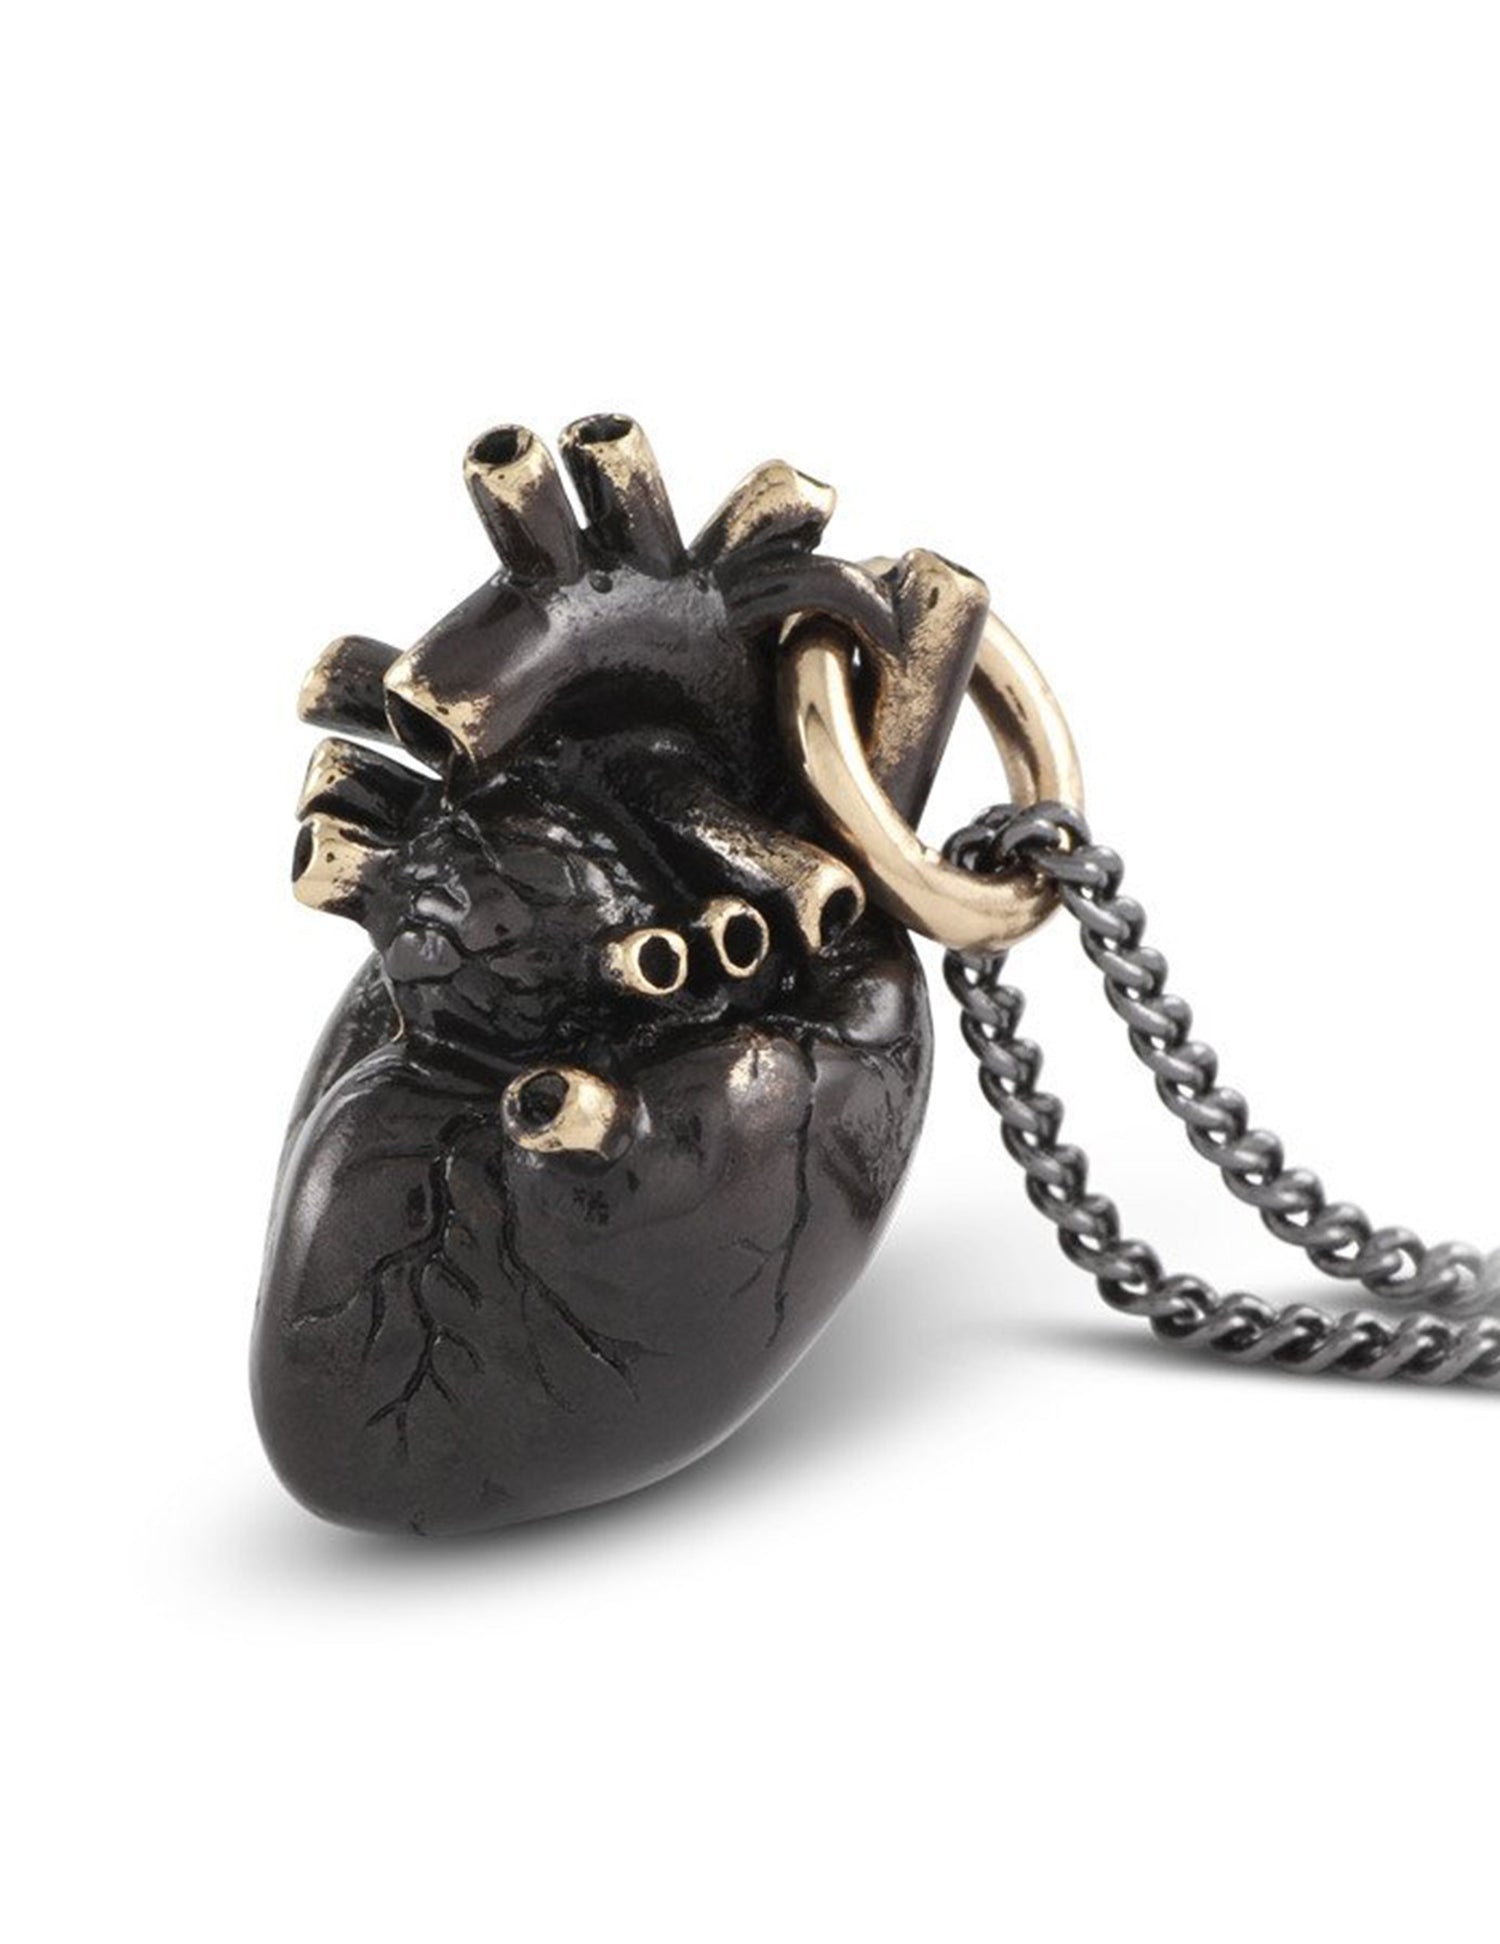 Collier cœur anatomique noir en bronze, entièrement travaillé à la main par Lost Apostle! Vendu chez Tah-dah ! 